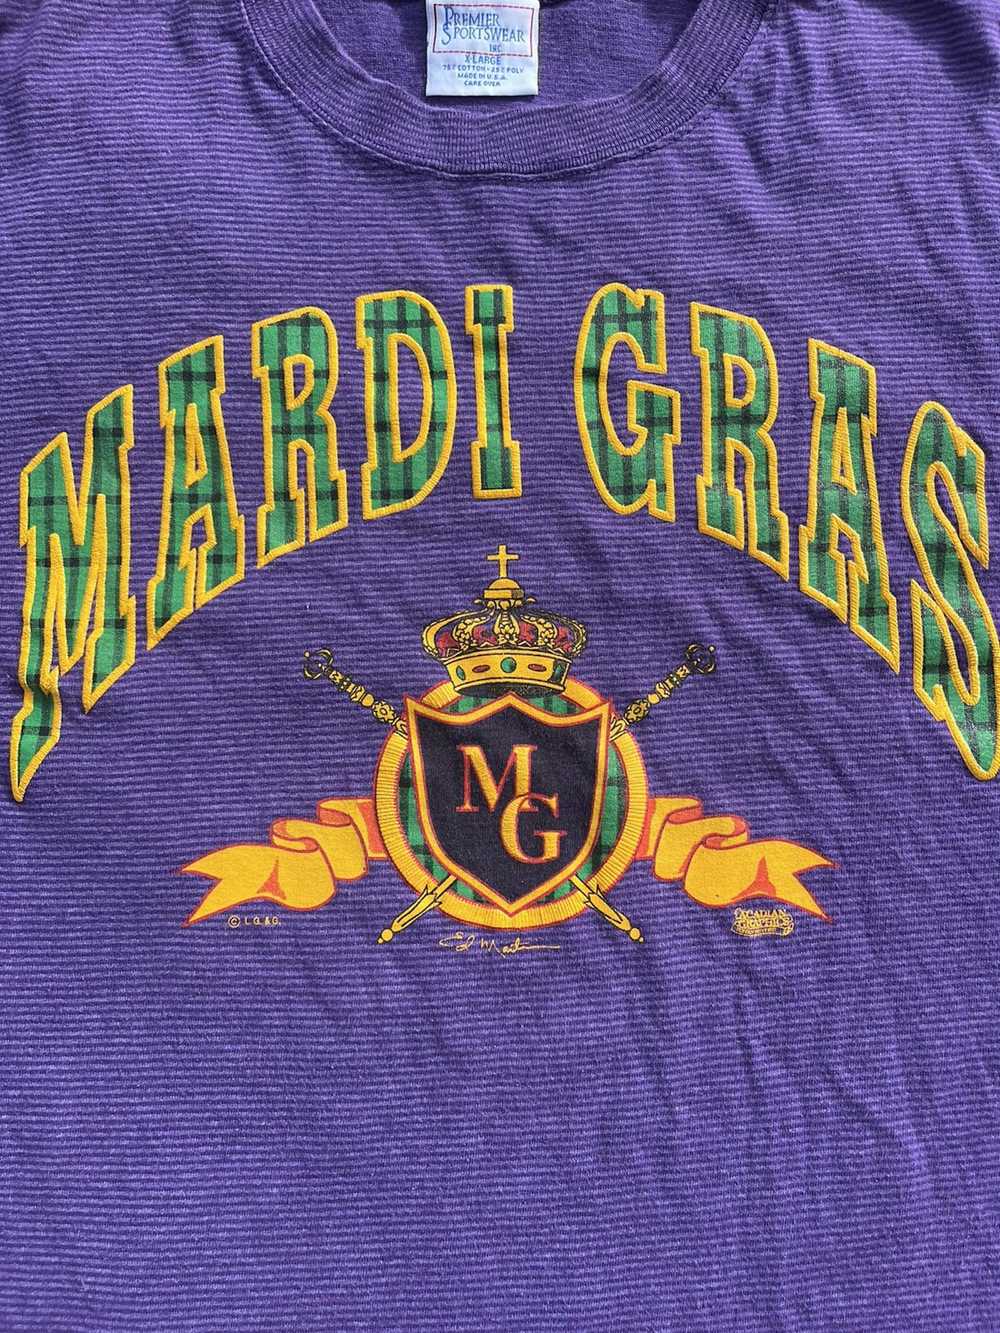 Vintage Vintage 90s Mardi Gras Striped Tee - image 5